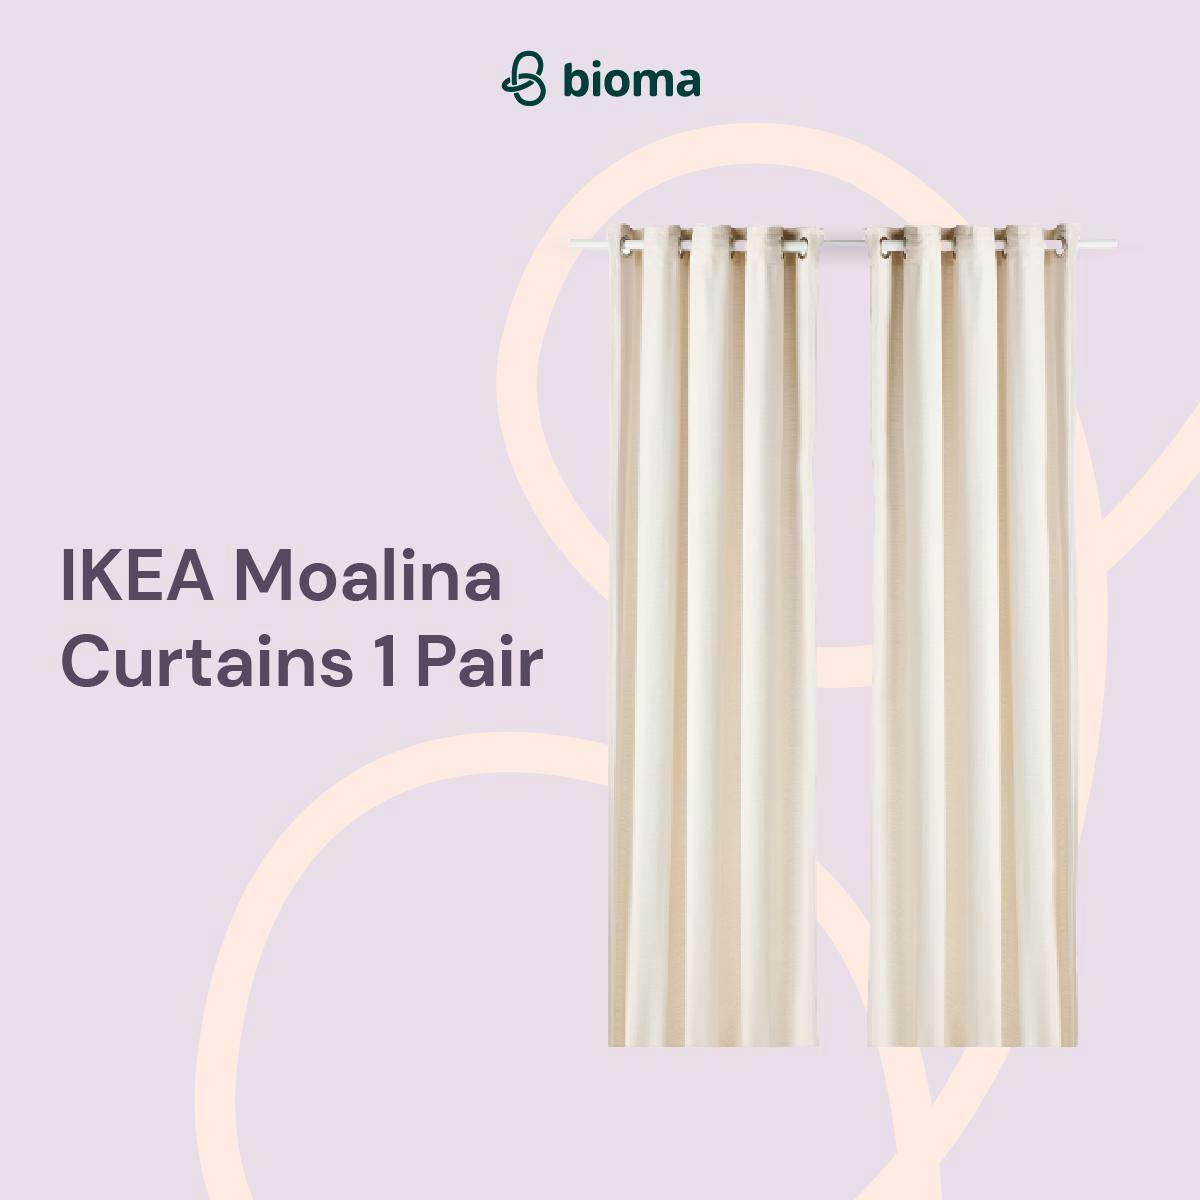 Moalina Curtains 1 Pair